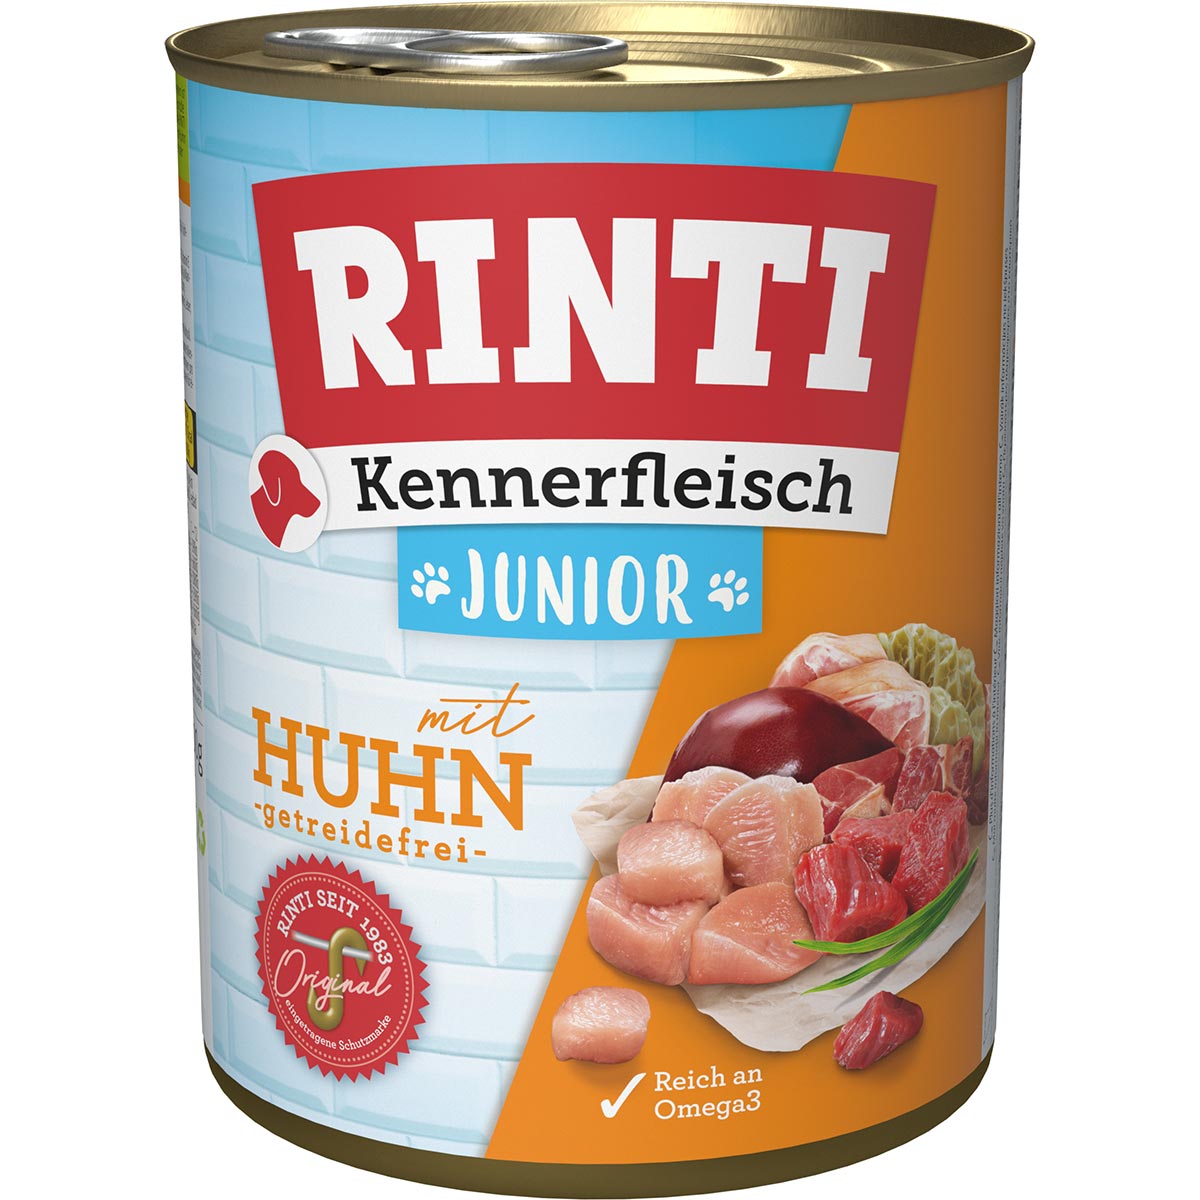 Rinti Kennerfleisch Junior mit Huhn 24x800g von Rinti